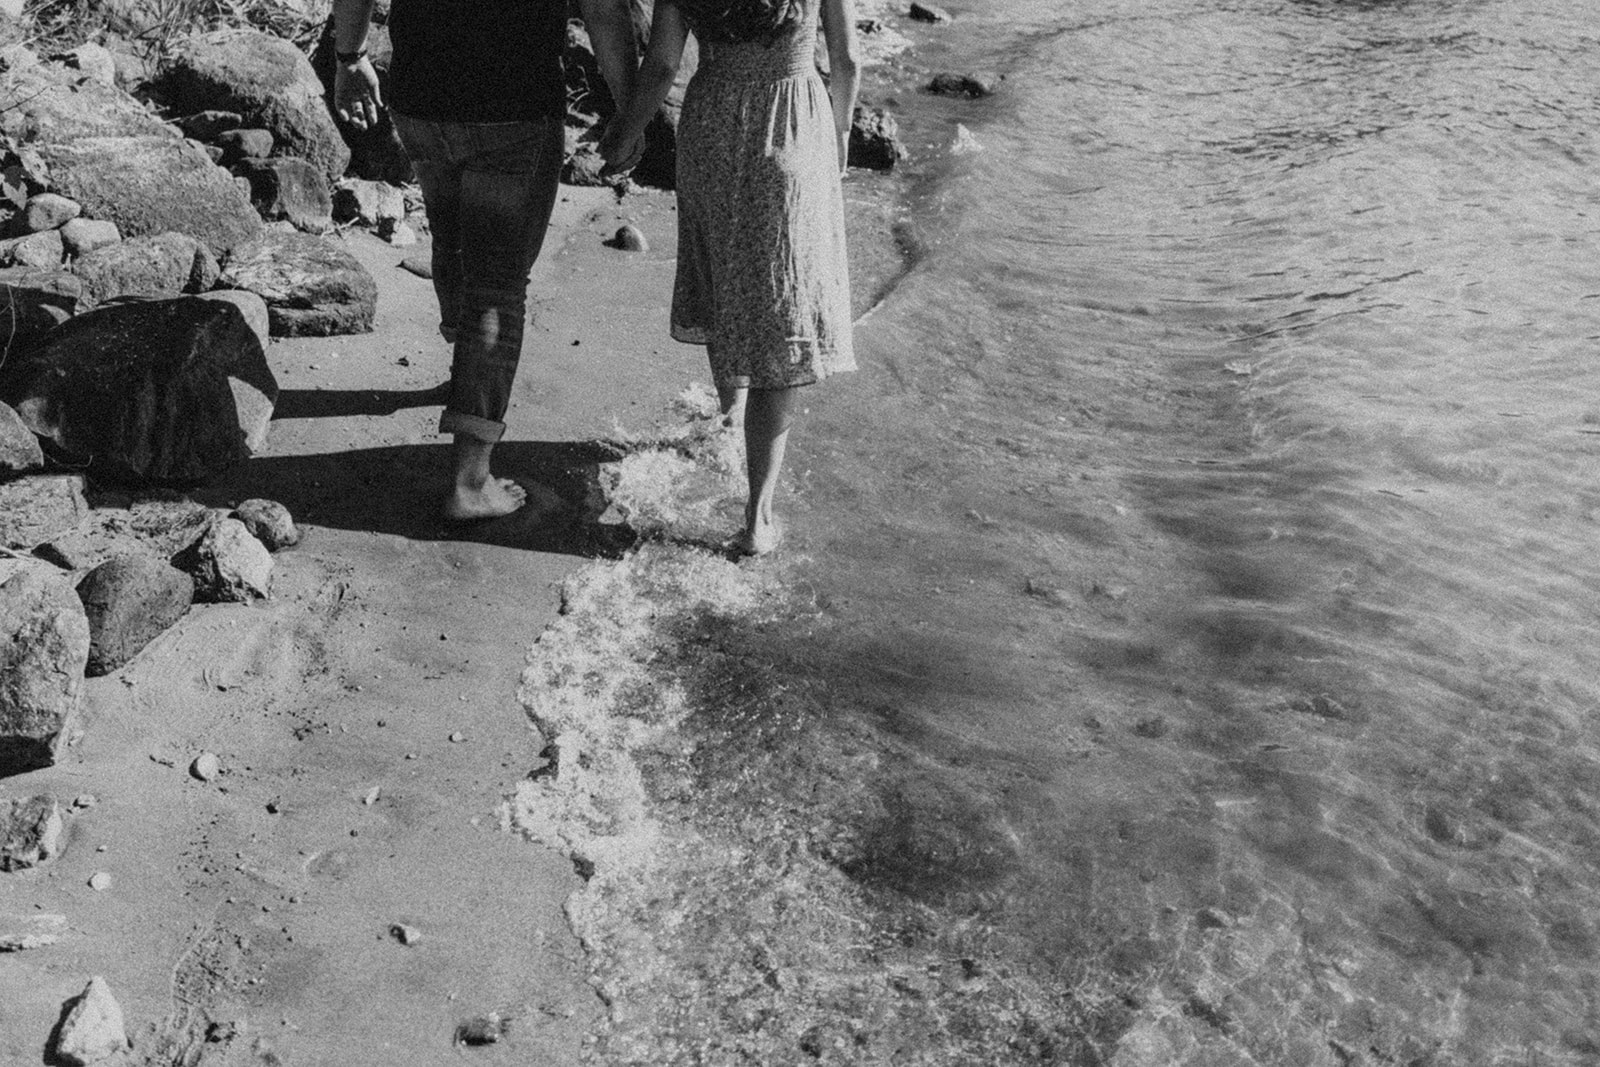 couple walking along rocky shore